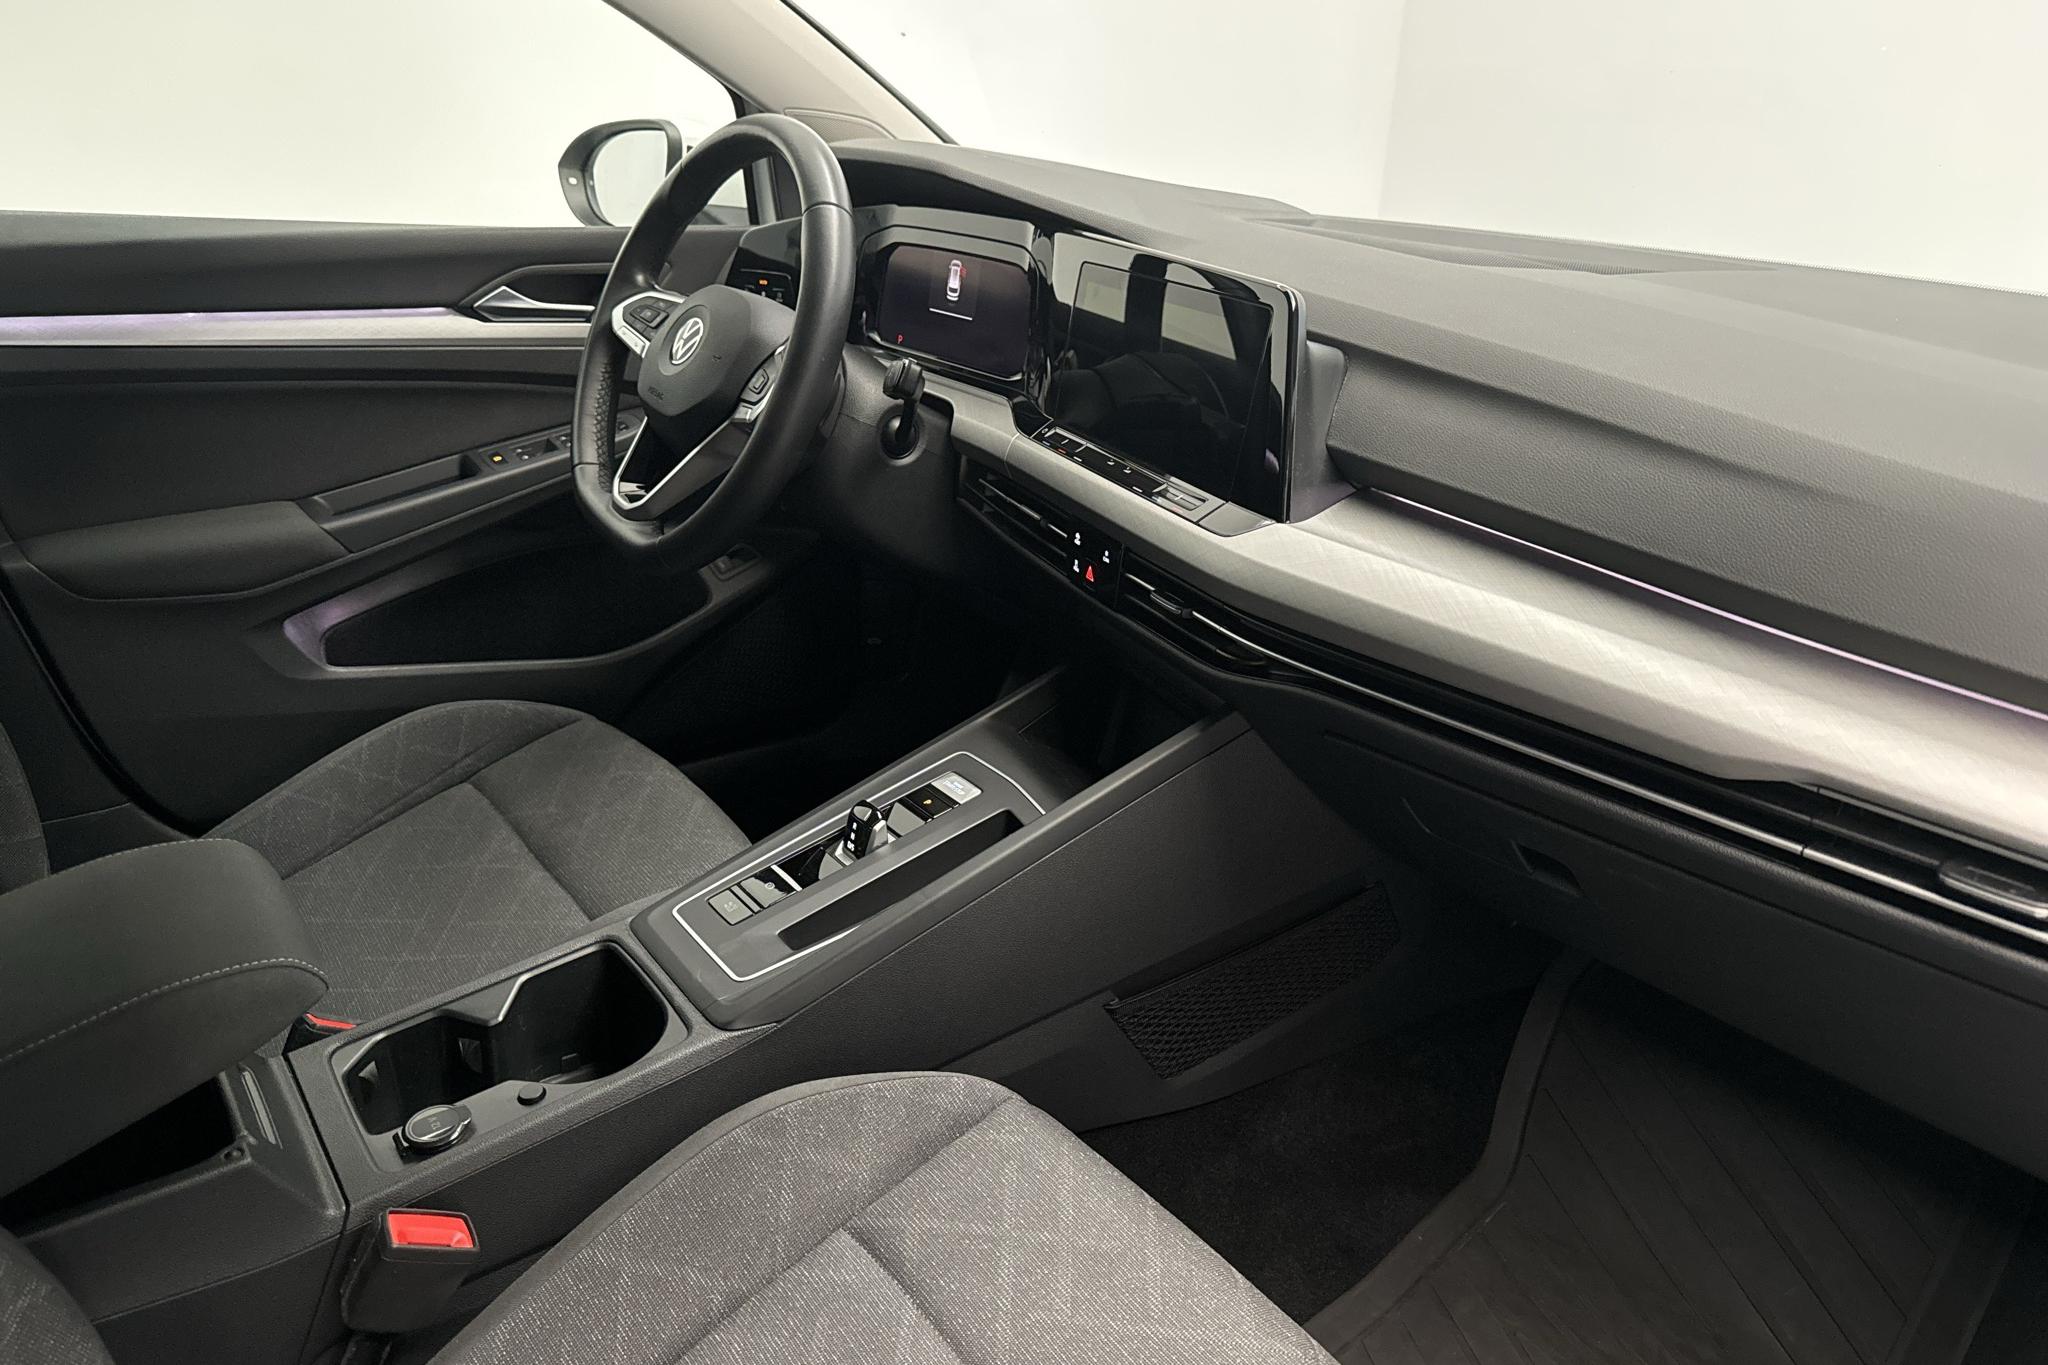 VW Golf VIII 1.5 TGI Sportscombi (130hk) - 72 720 km - Automaattinen - valkoinen - 2021